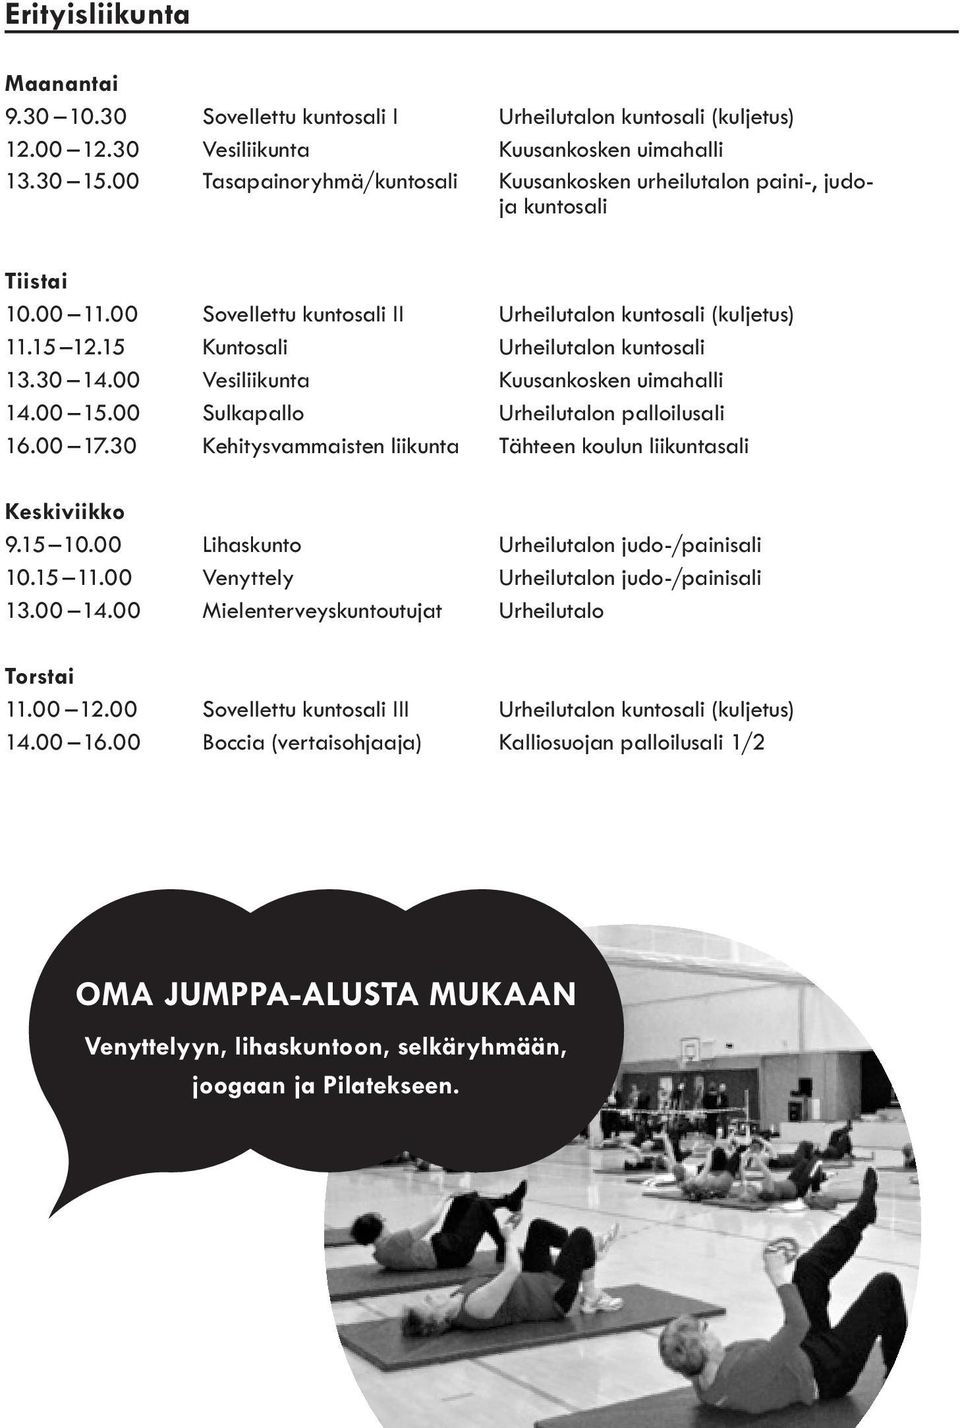 15 Kuntosali Urheilutalon kuntosali 13.30 14.00 Vesiliikunta Kuusankosken uimahalli 14.00 15.00 Sulkapallo Urheilutalon palloilusali 16.00 17.